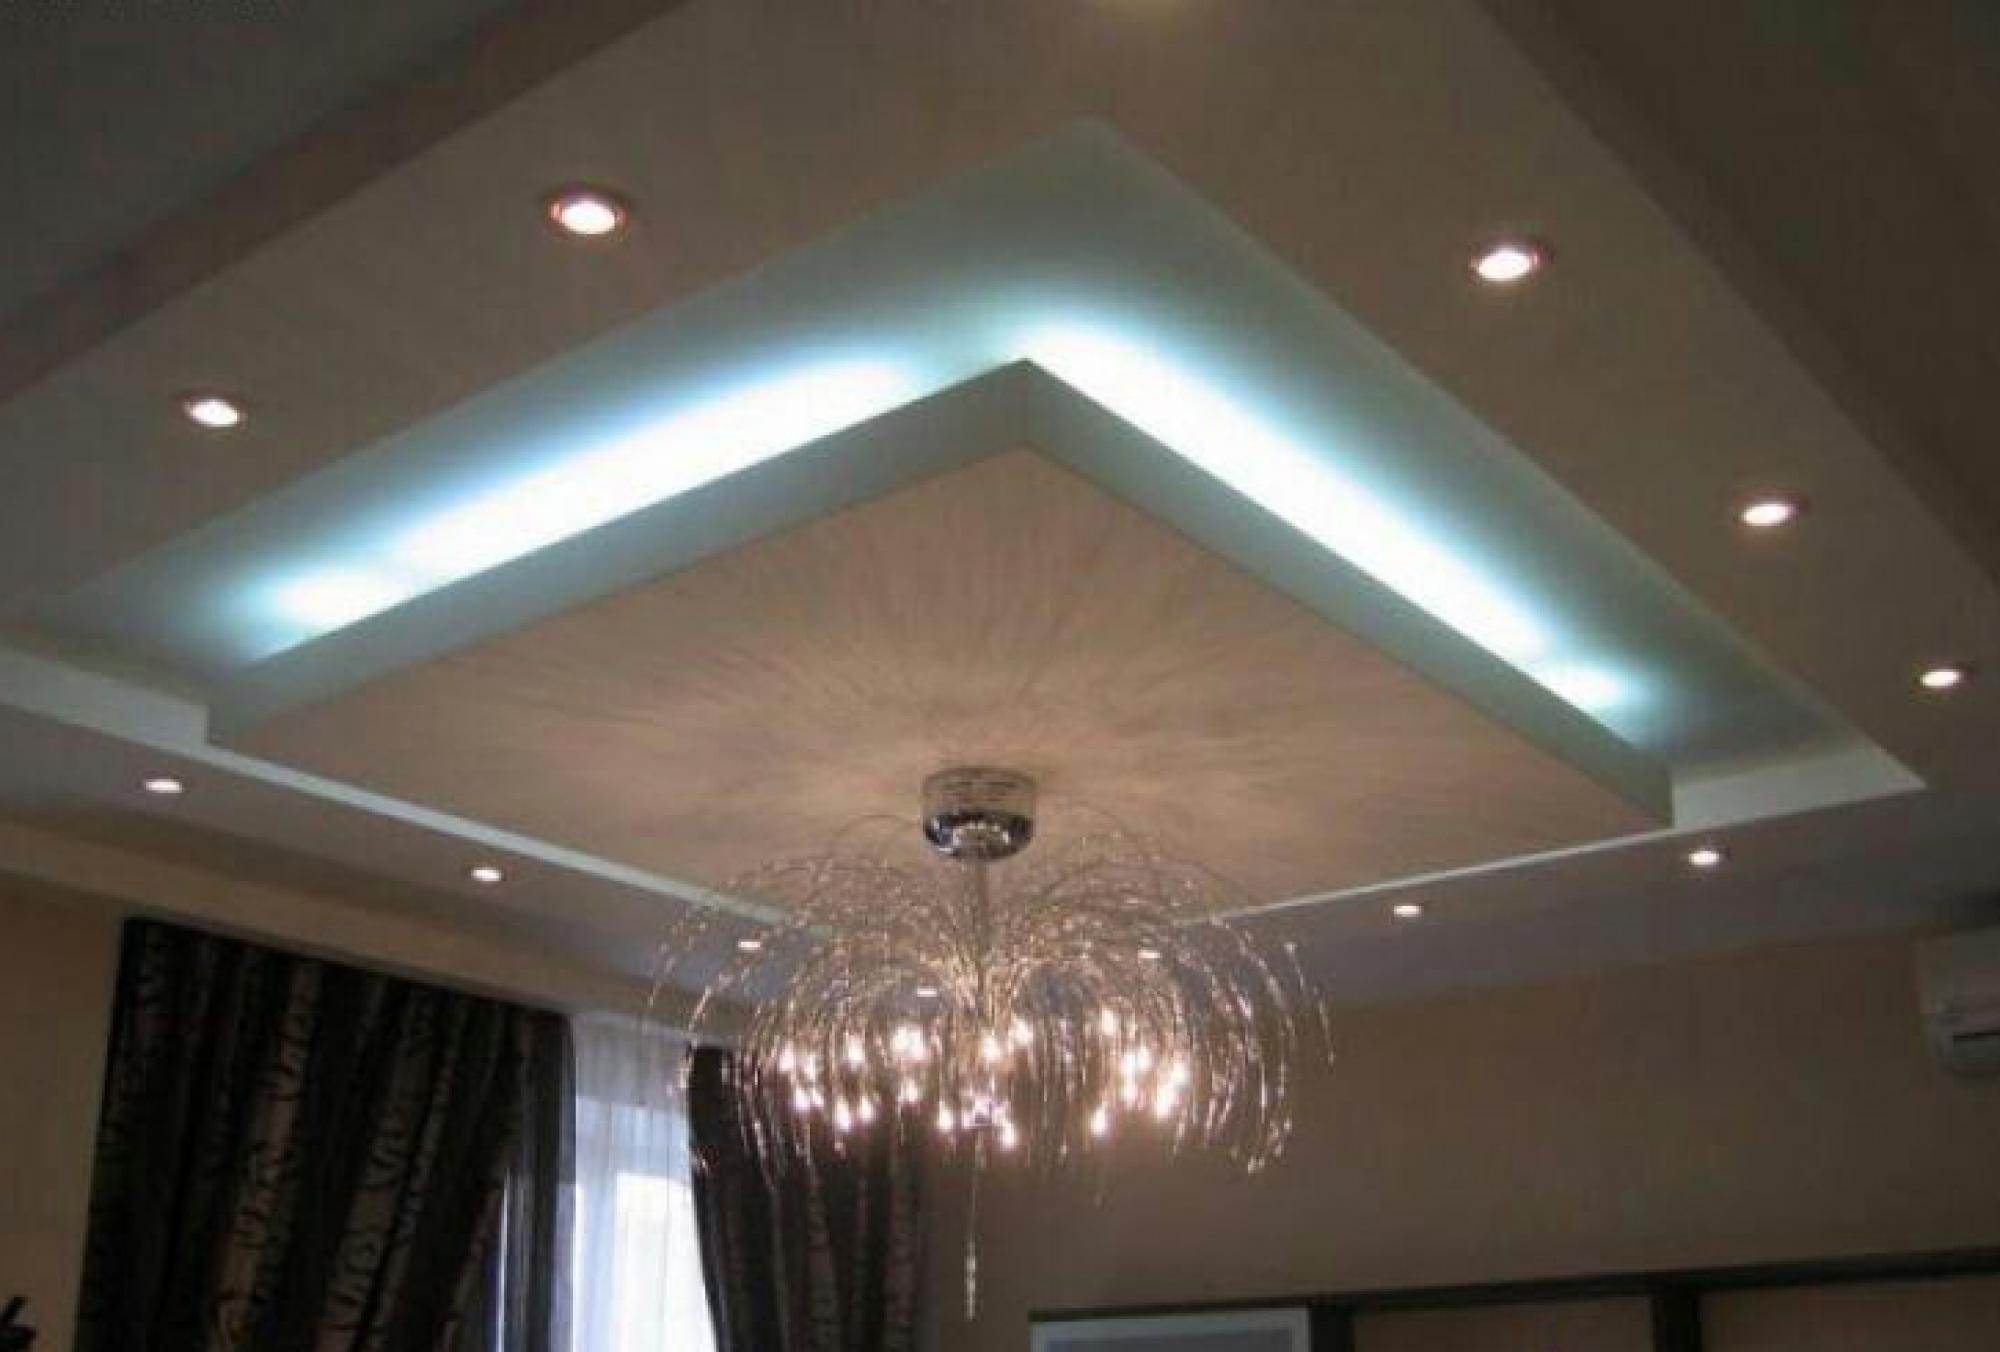 Гипсокартонные потолки с двумя и более уровнями позволяют привнести дополнительный декор и подсветку